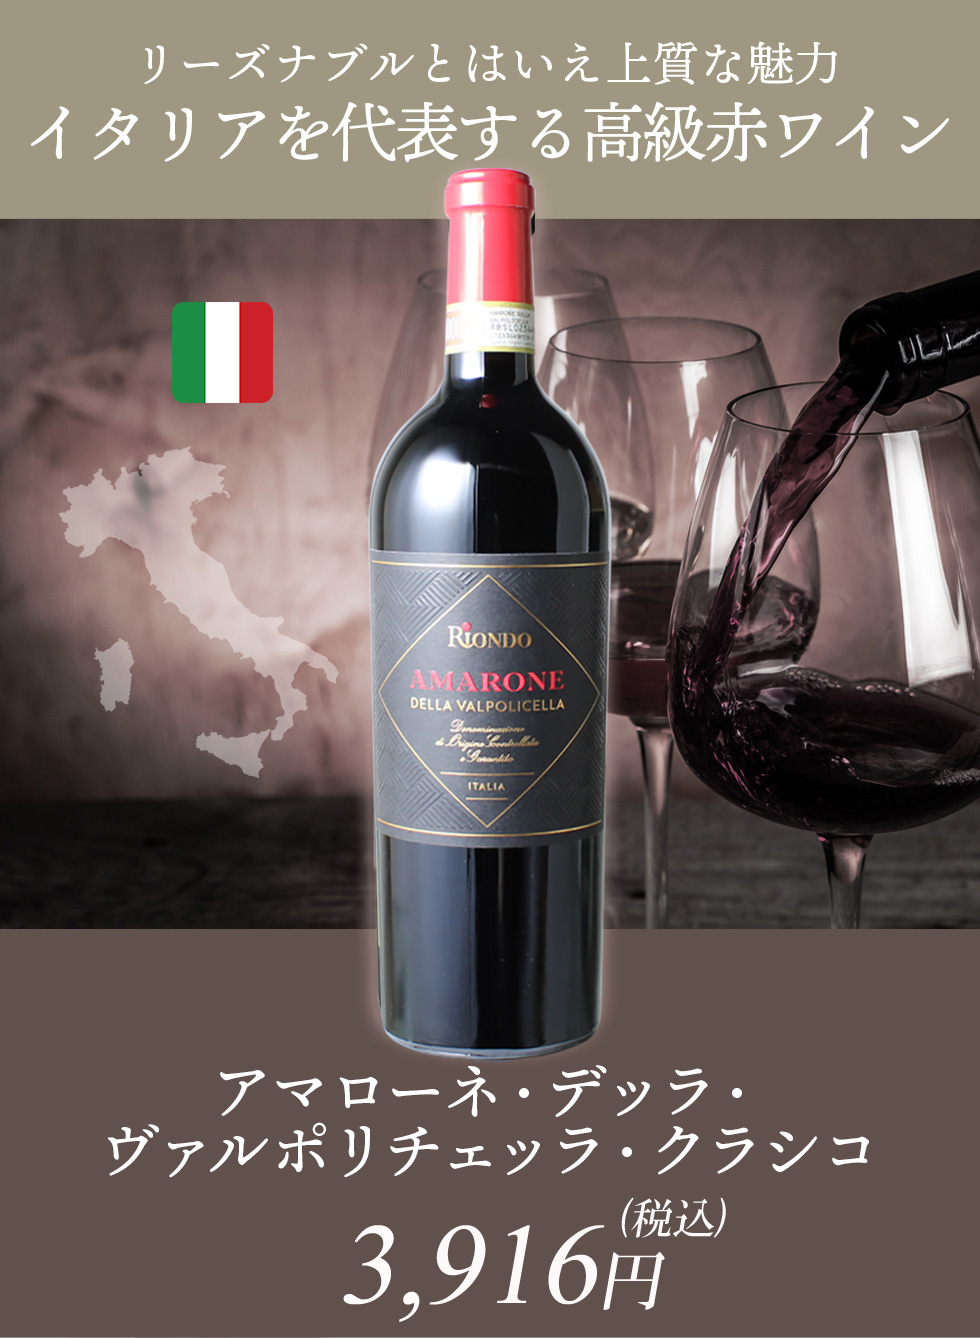 イタリアを代表する高級ワイン「アマローネ」